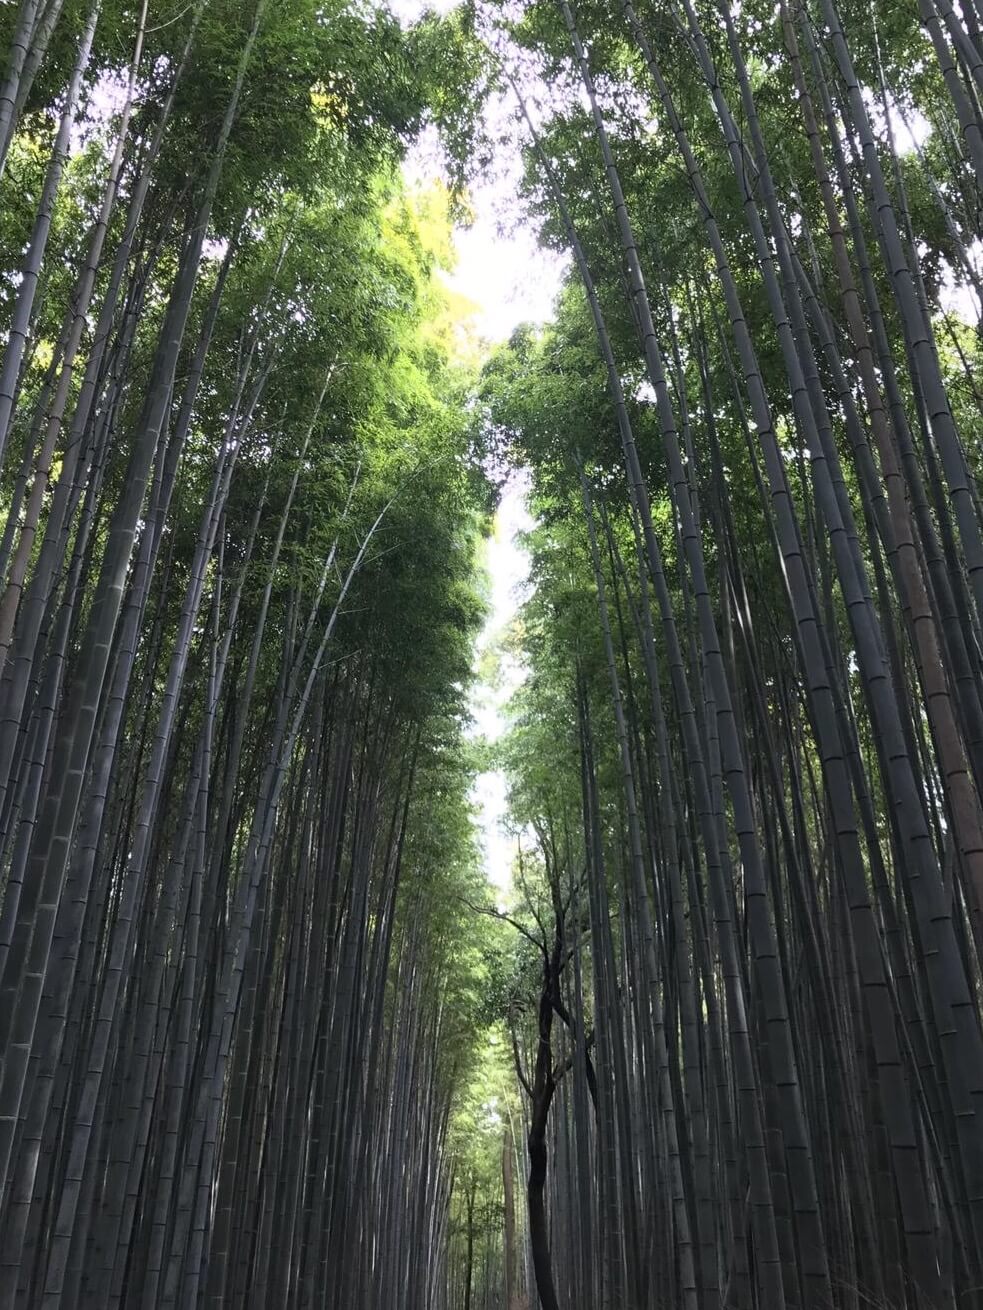 Little bamboo forest near a green tea farm hidden in the mountains in Shizuoka